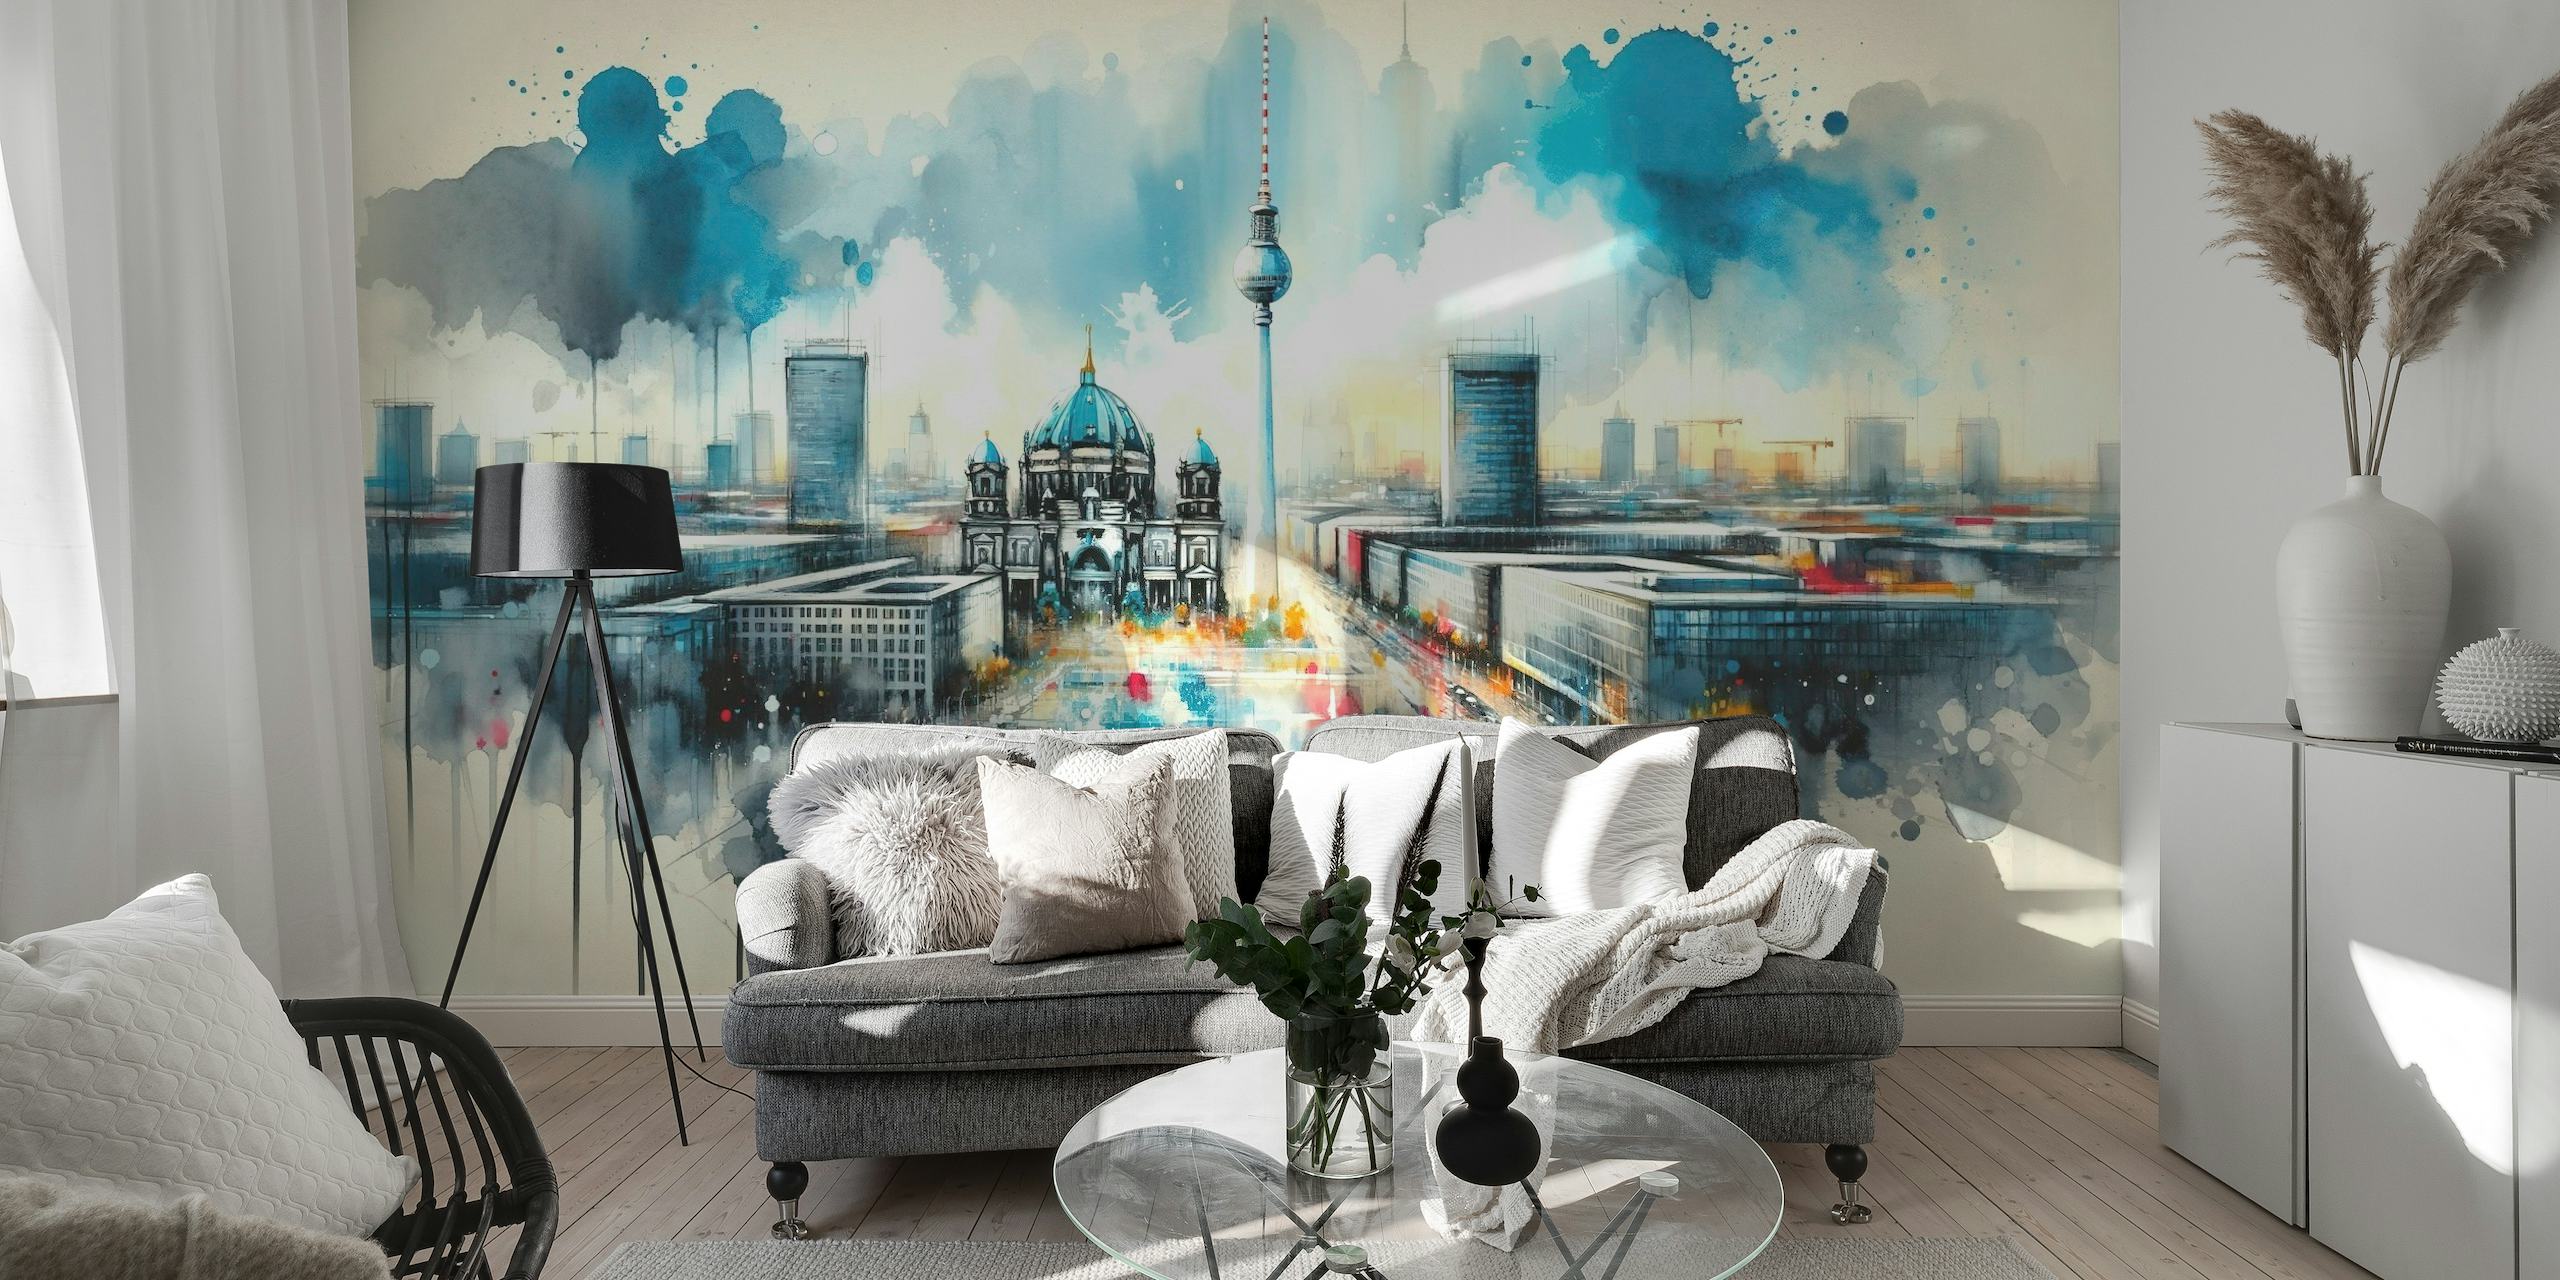 Murale ad acquerello dell'architettura moderna di Berlino con punti di riferimento iconici e un'interpretazione artistica e dinamica.